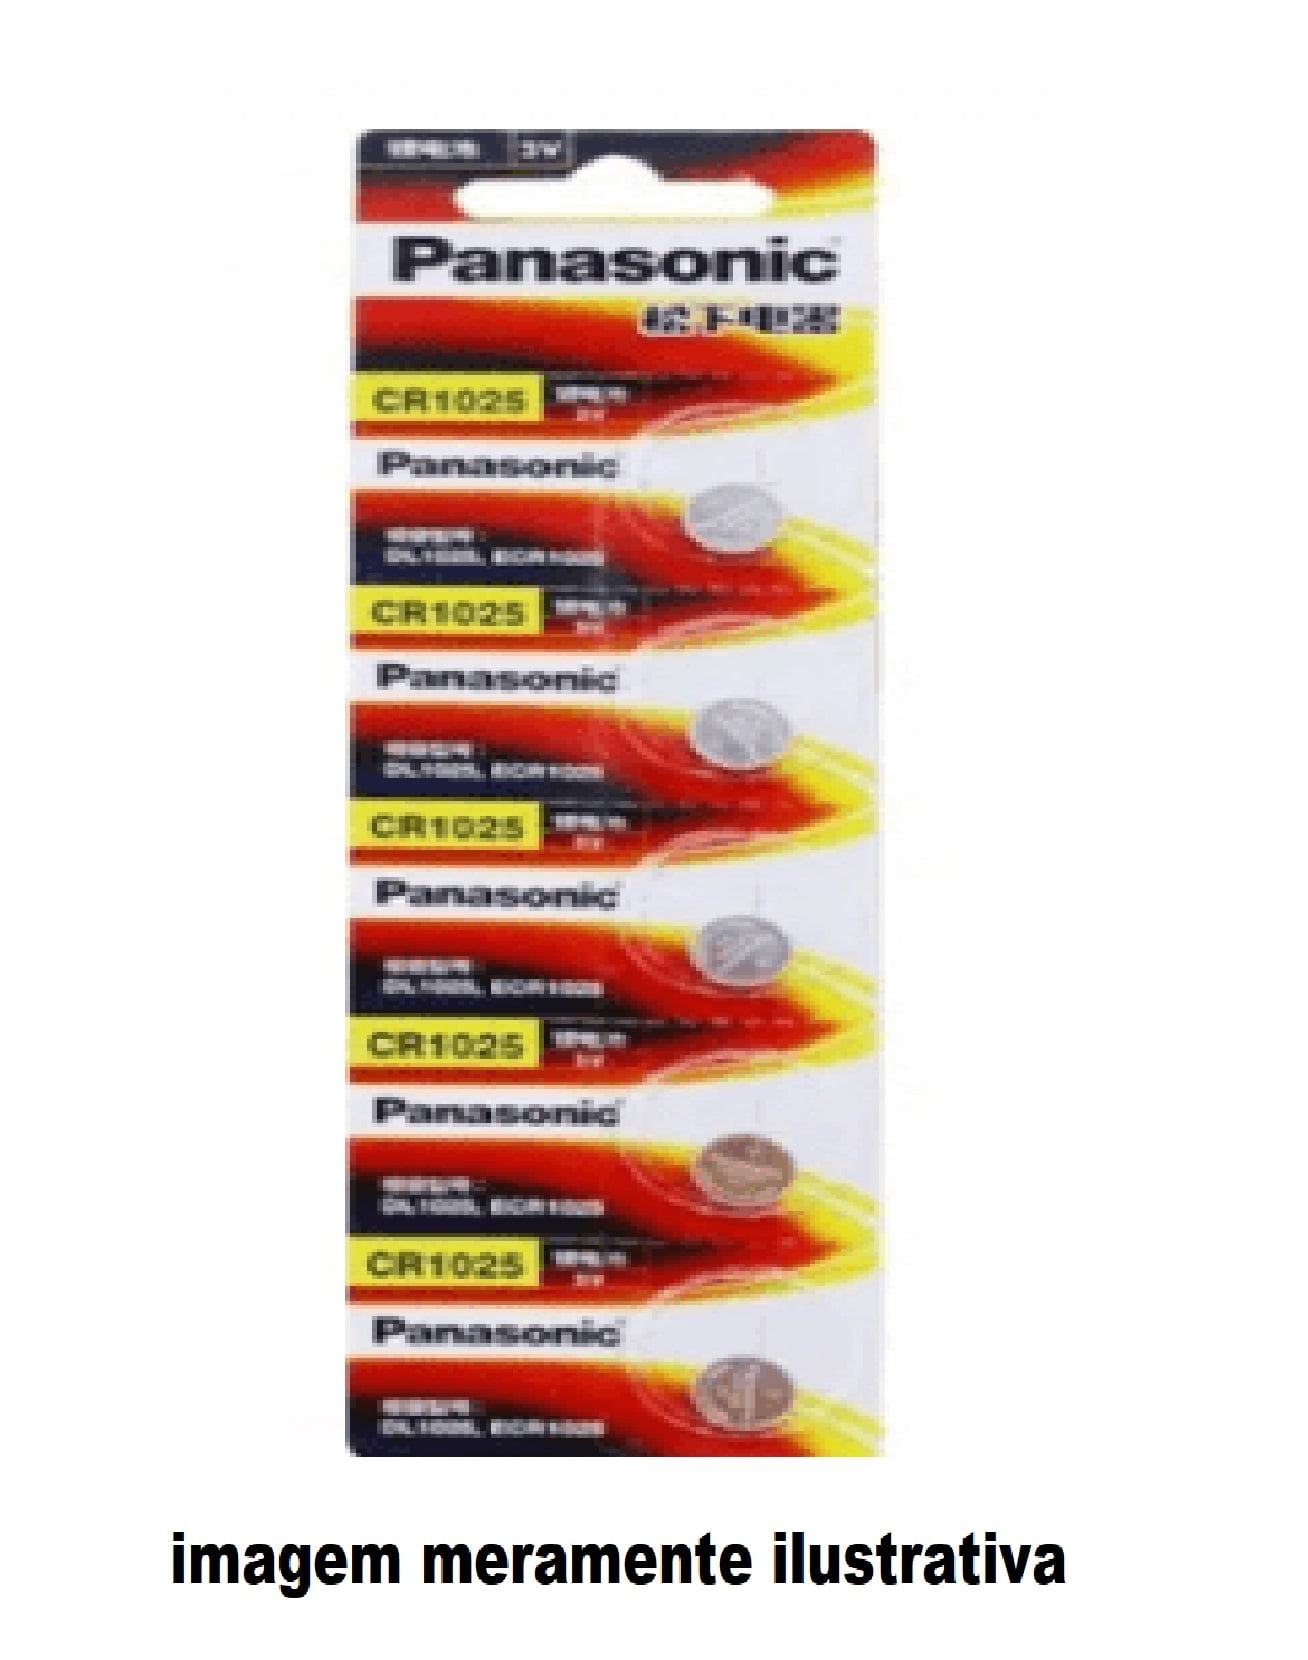 5 Baterias Panasonic Cr1025 3v Relógio Original